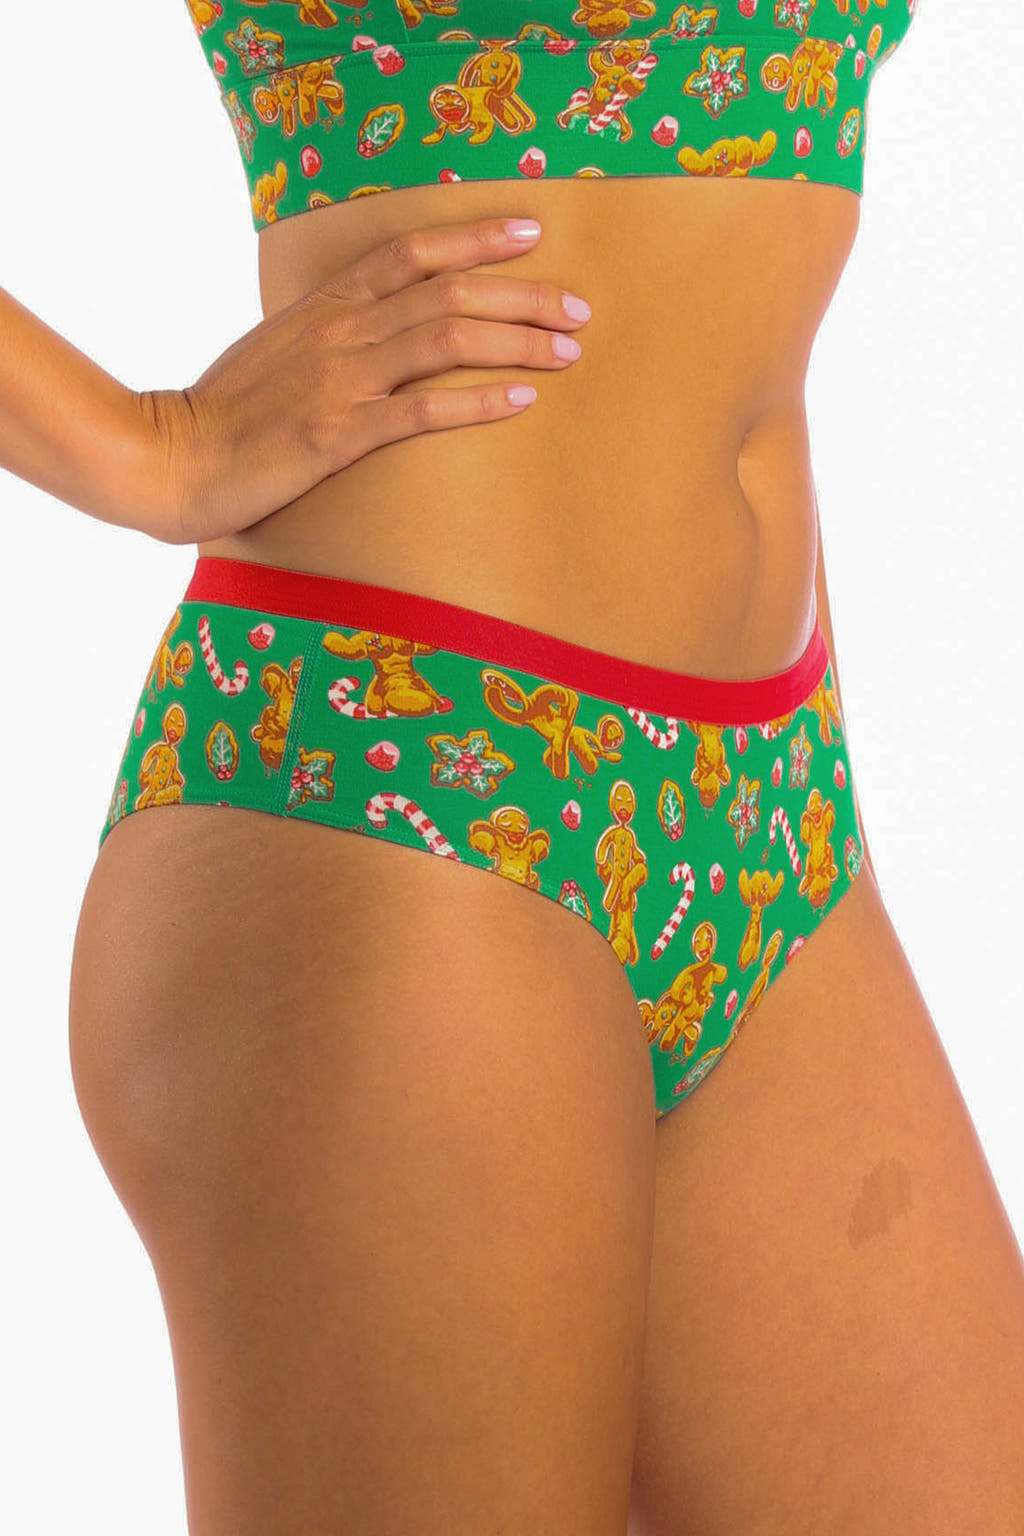 Green ginger cheeky underwear